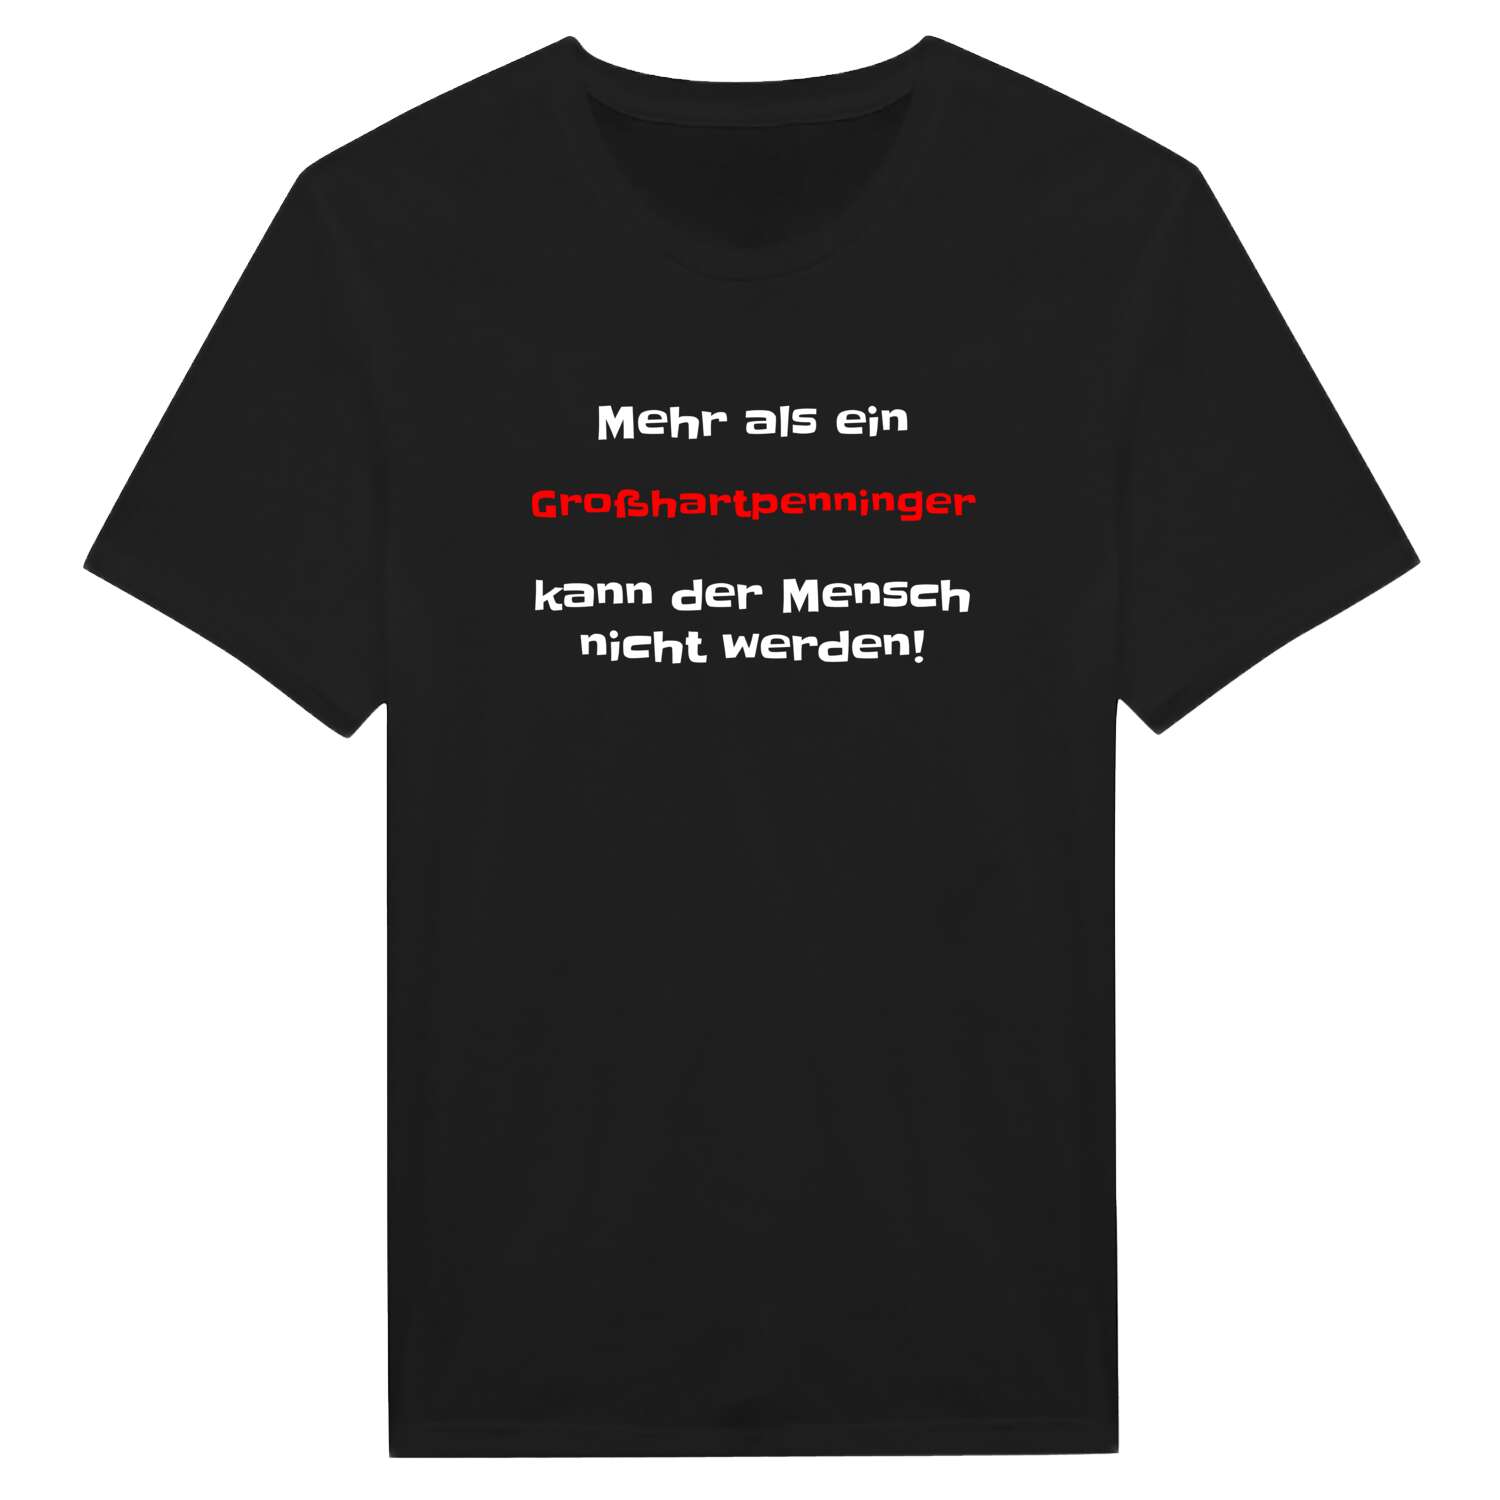 Großhartpenning T-Shirt »Mehr als ein«